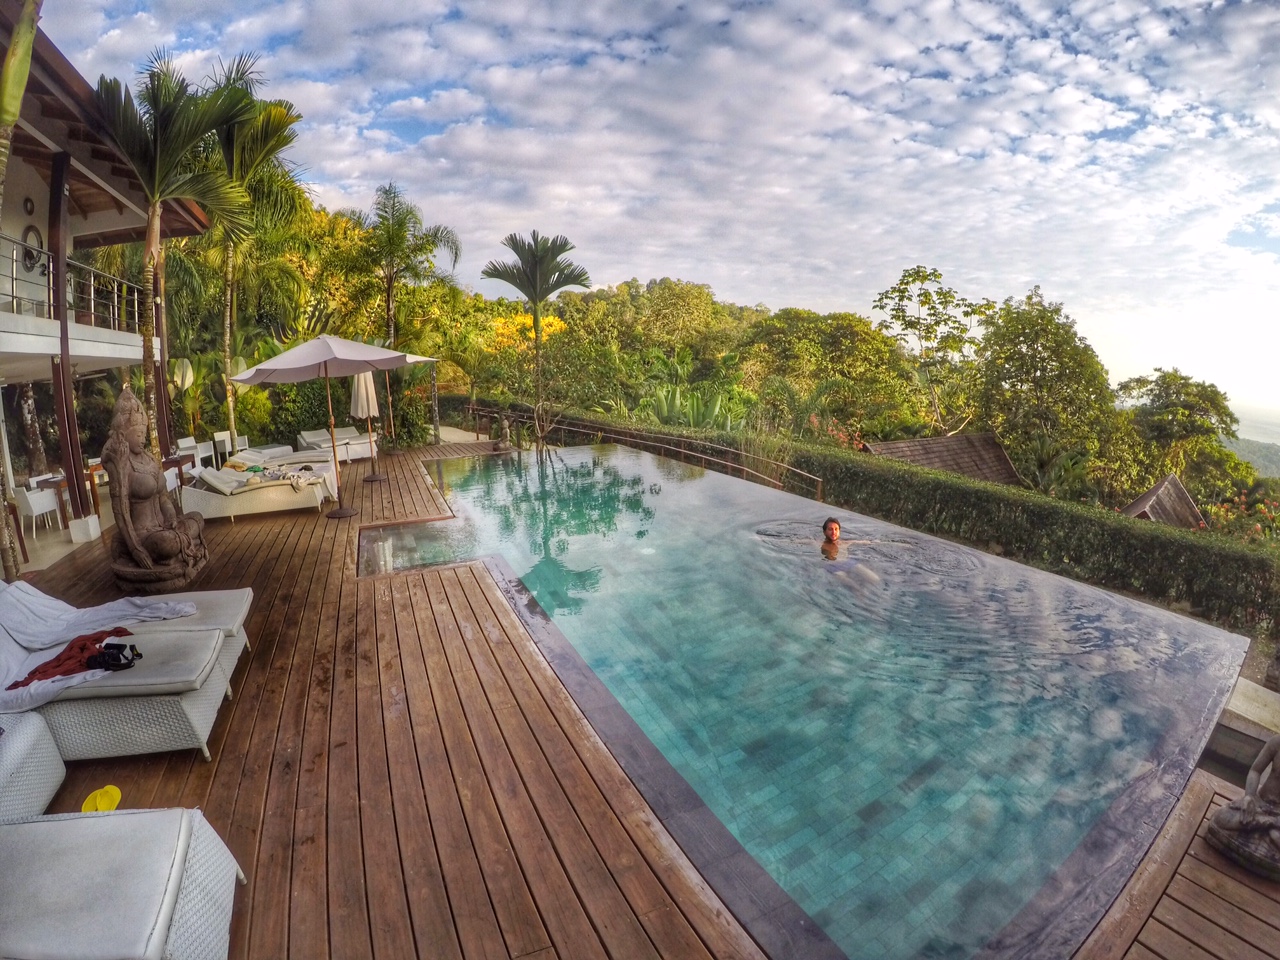 oxygen jungle villas costa rica uvita hotel